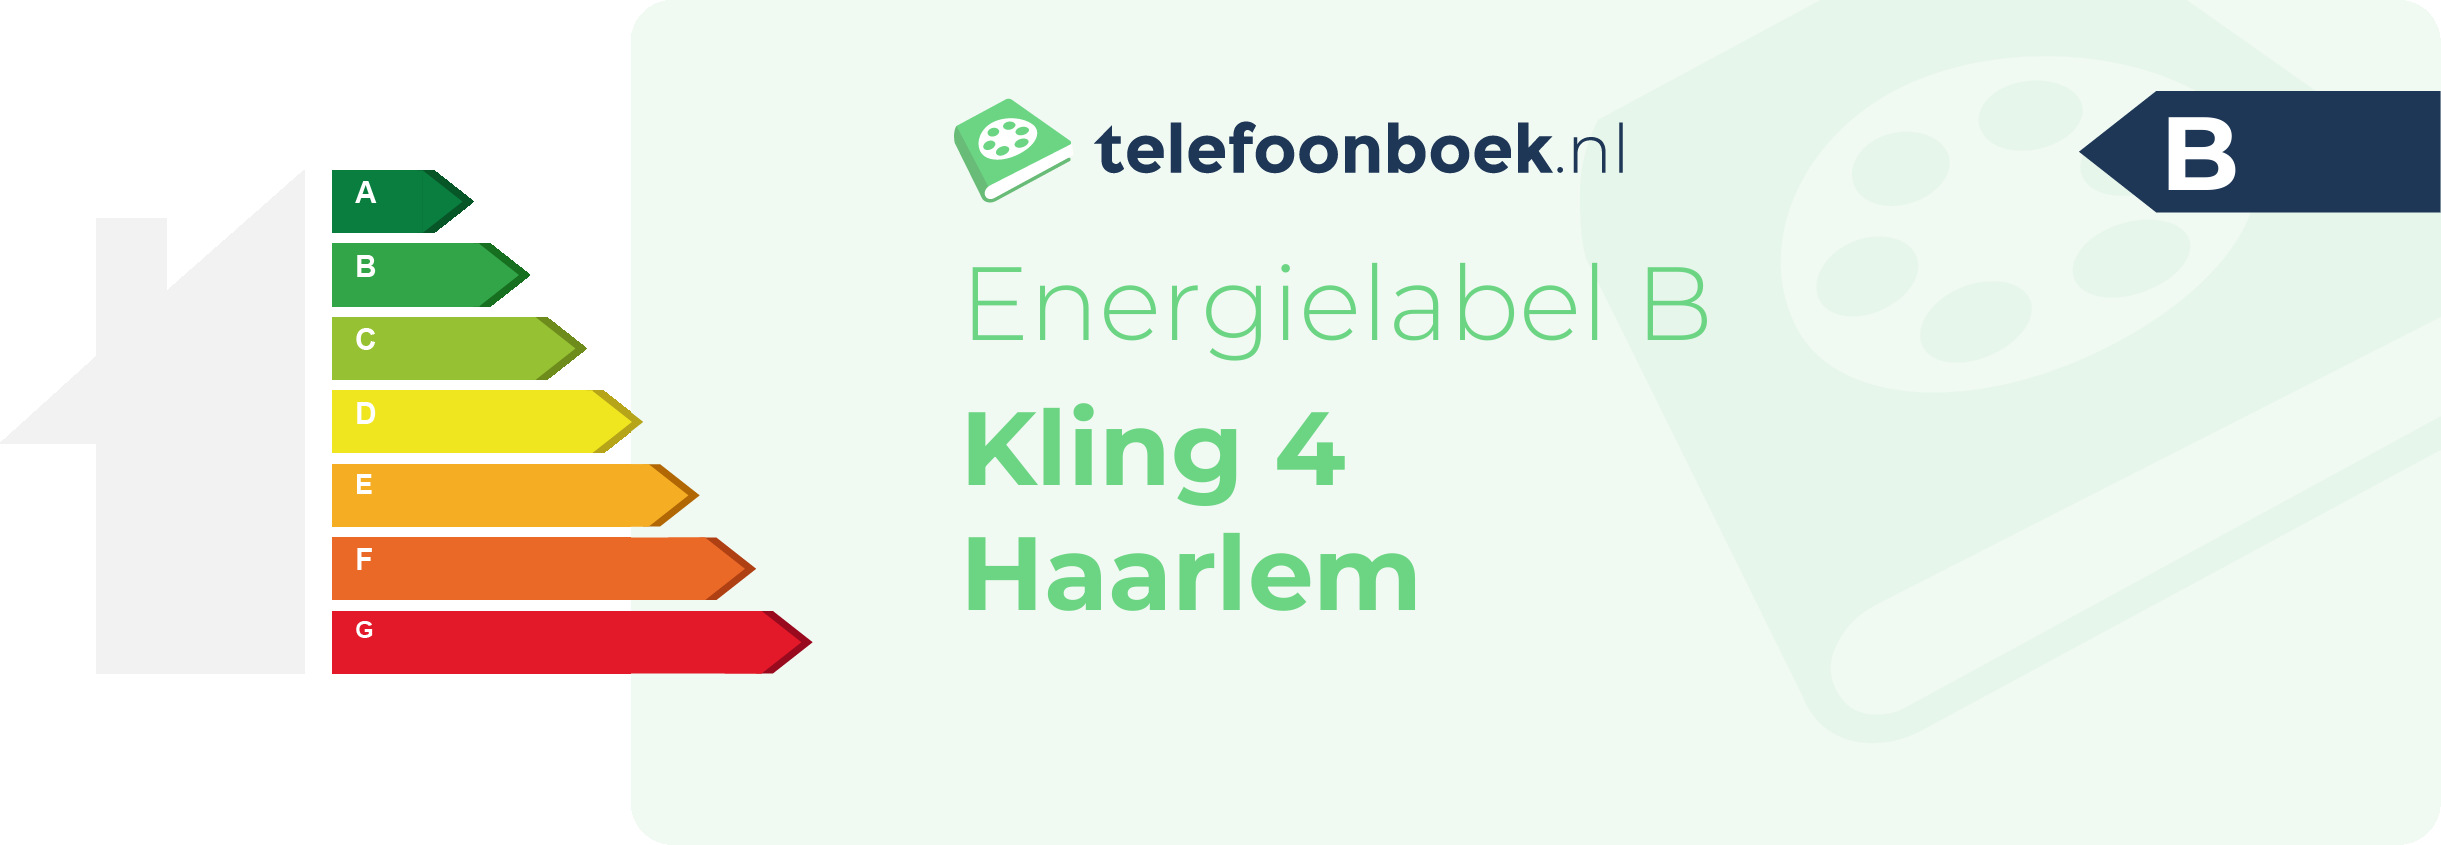 Energielabel Kling 4 Haarlem